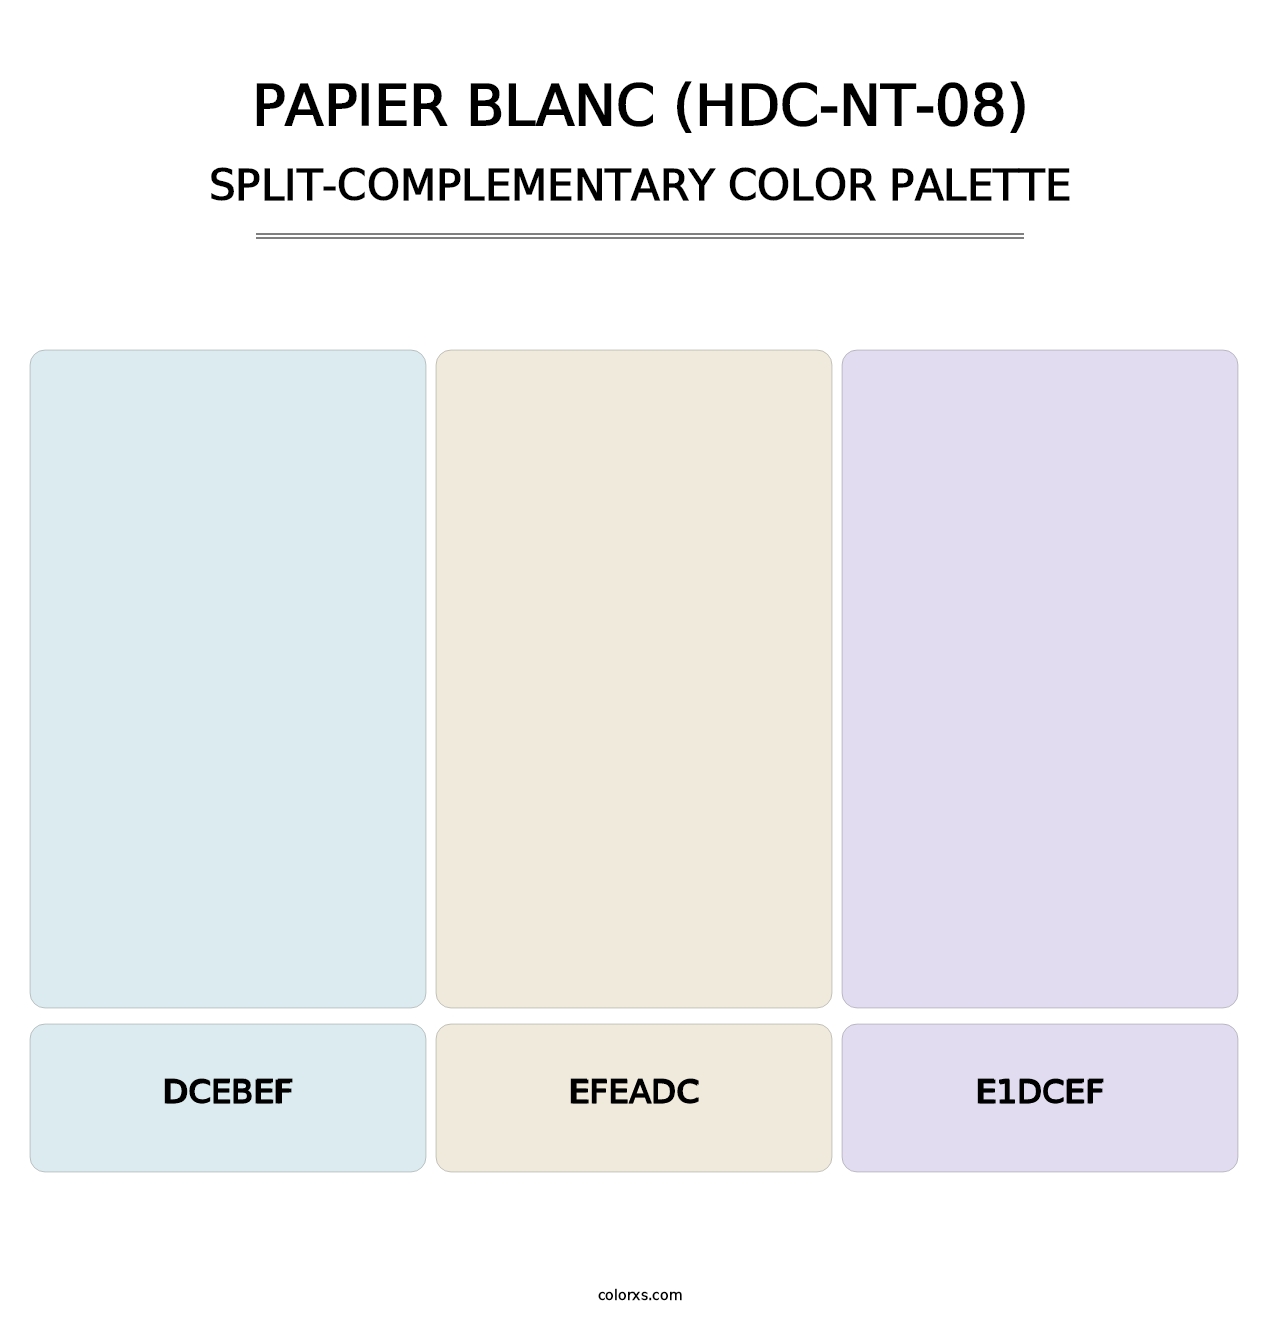 Papier Blanc (HDC-NT-08) - Split-Complementary Color Palette